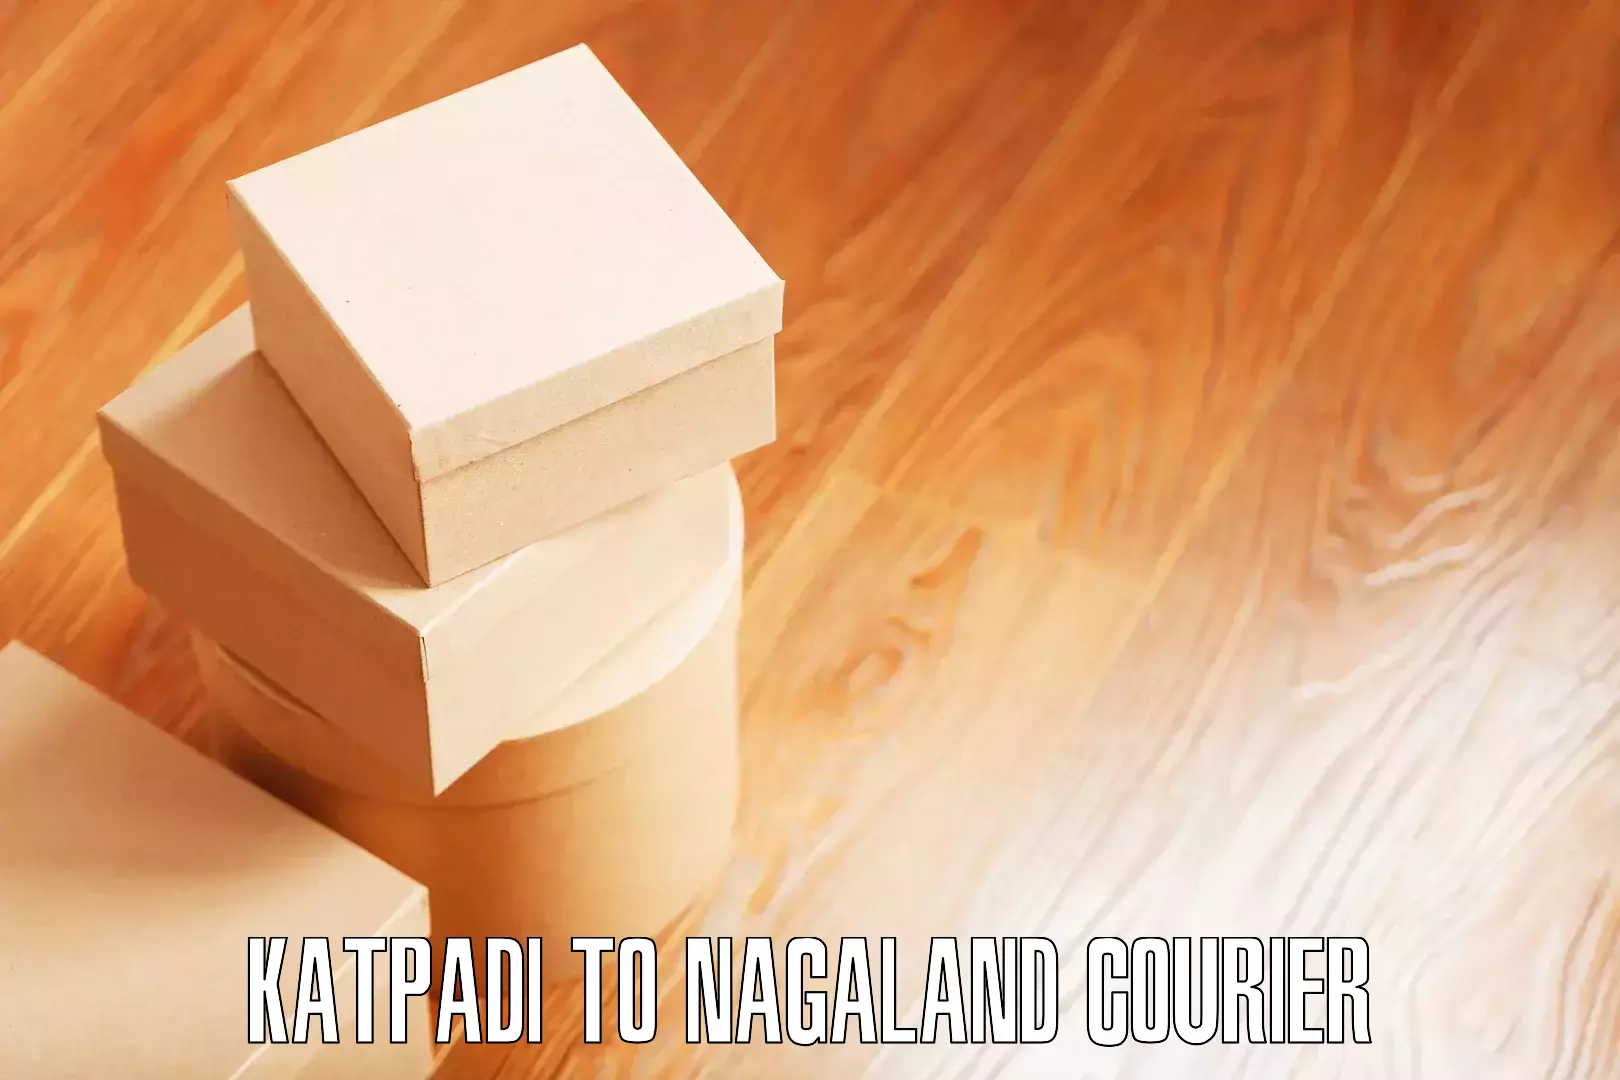 Professional moving strategies Katpadi to Wokha